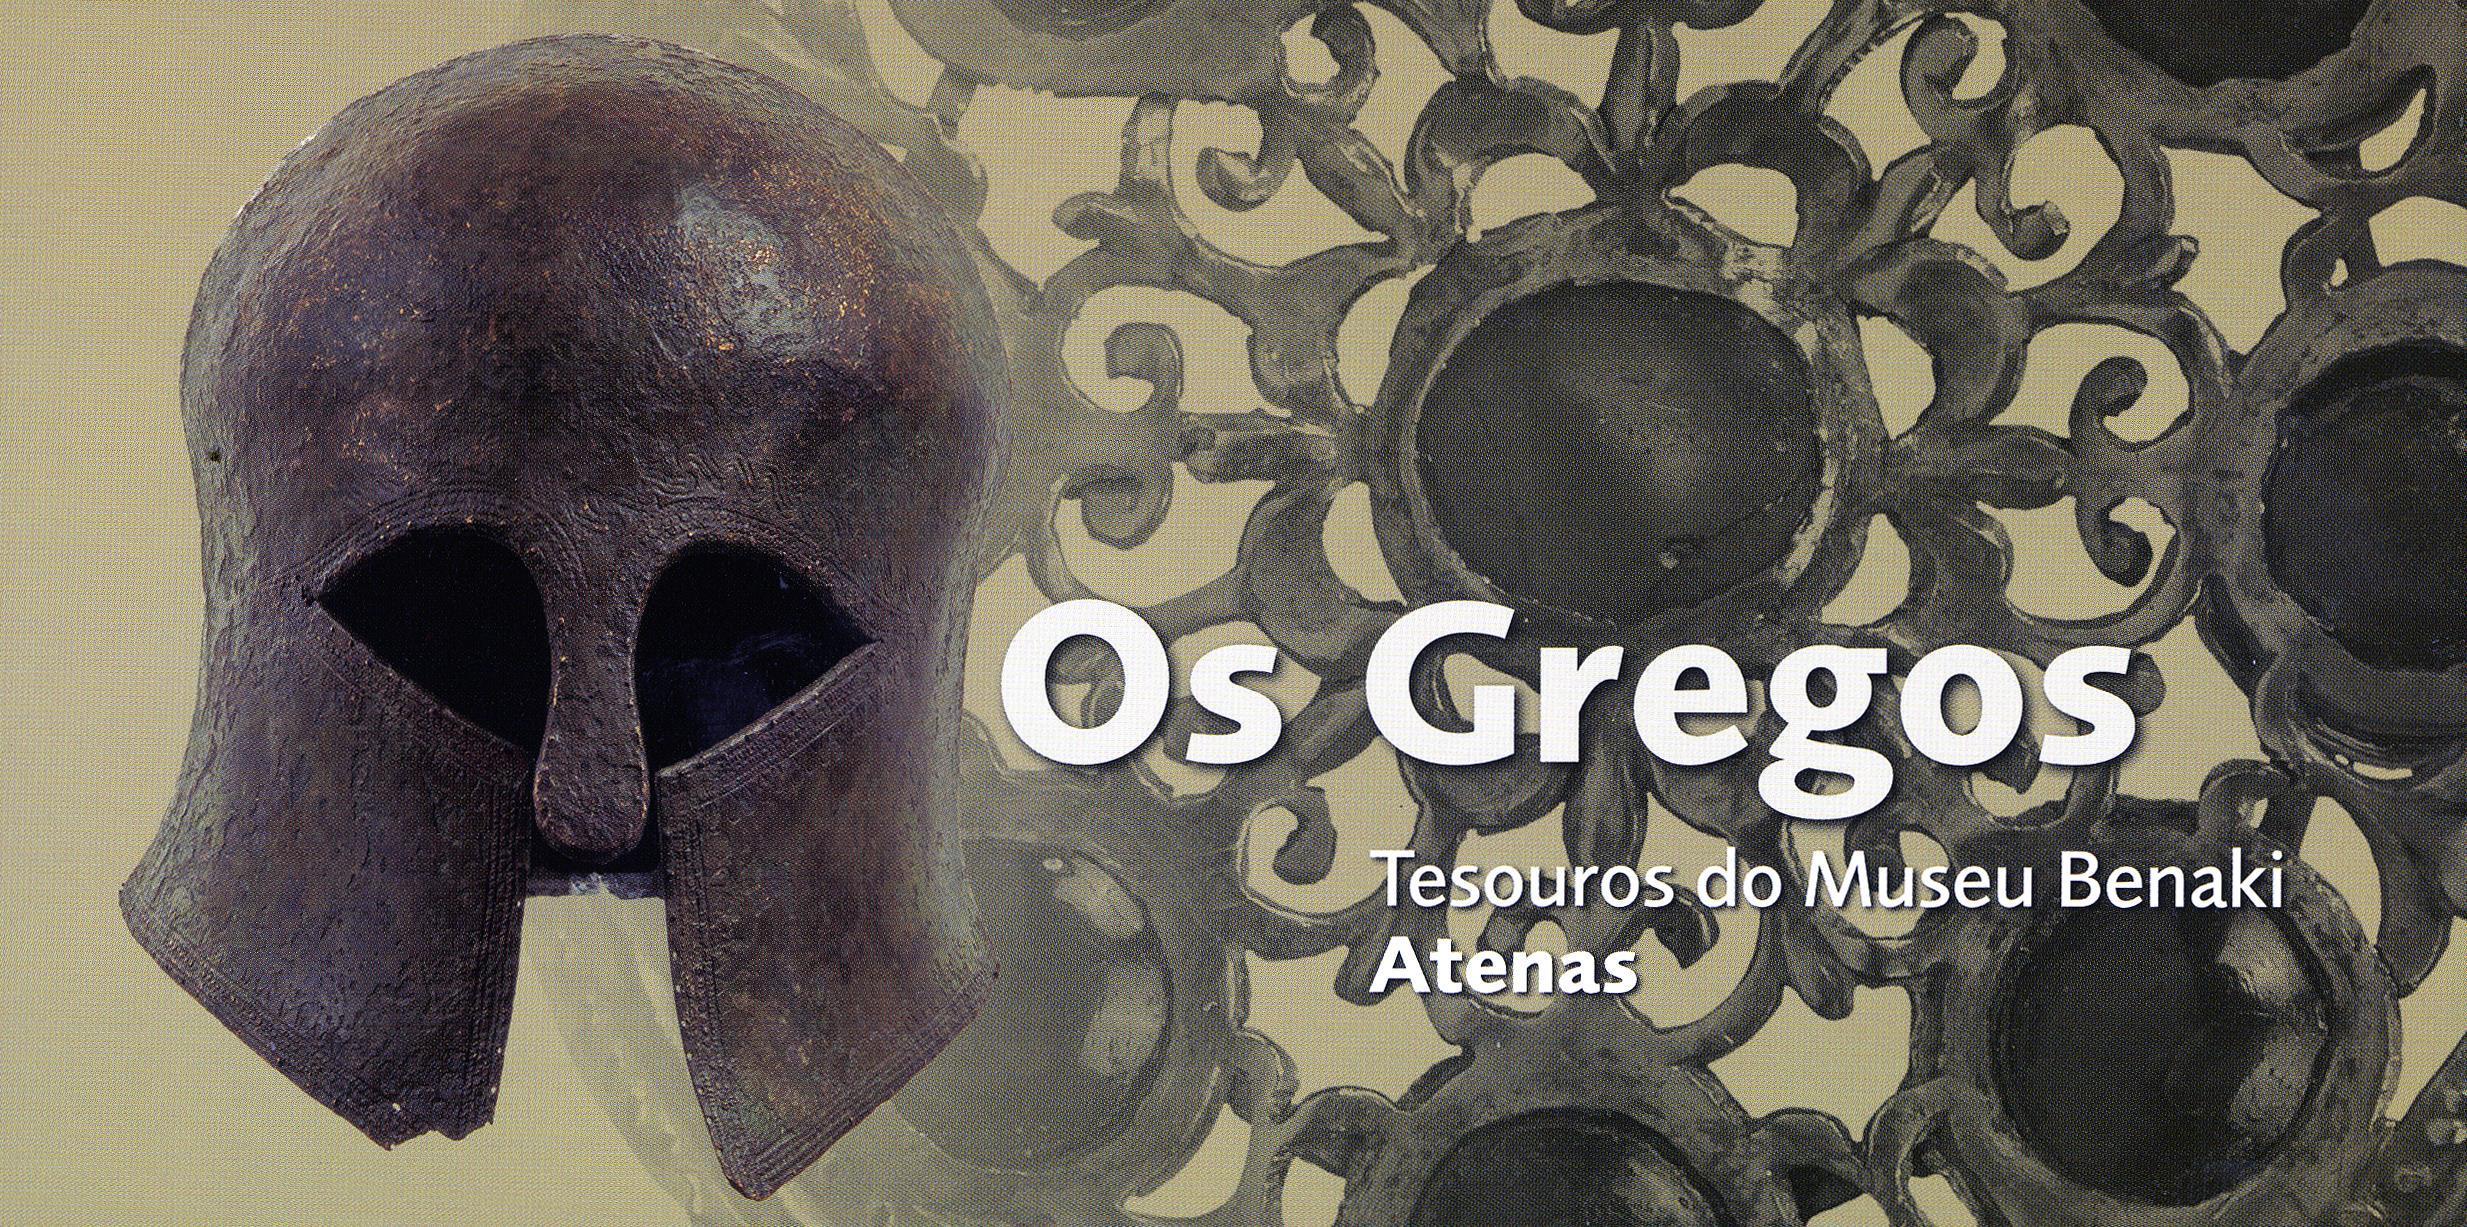 Os Gregos. Tesouros do Museu Benaki, Atenas